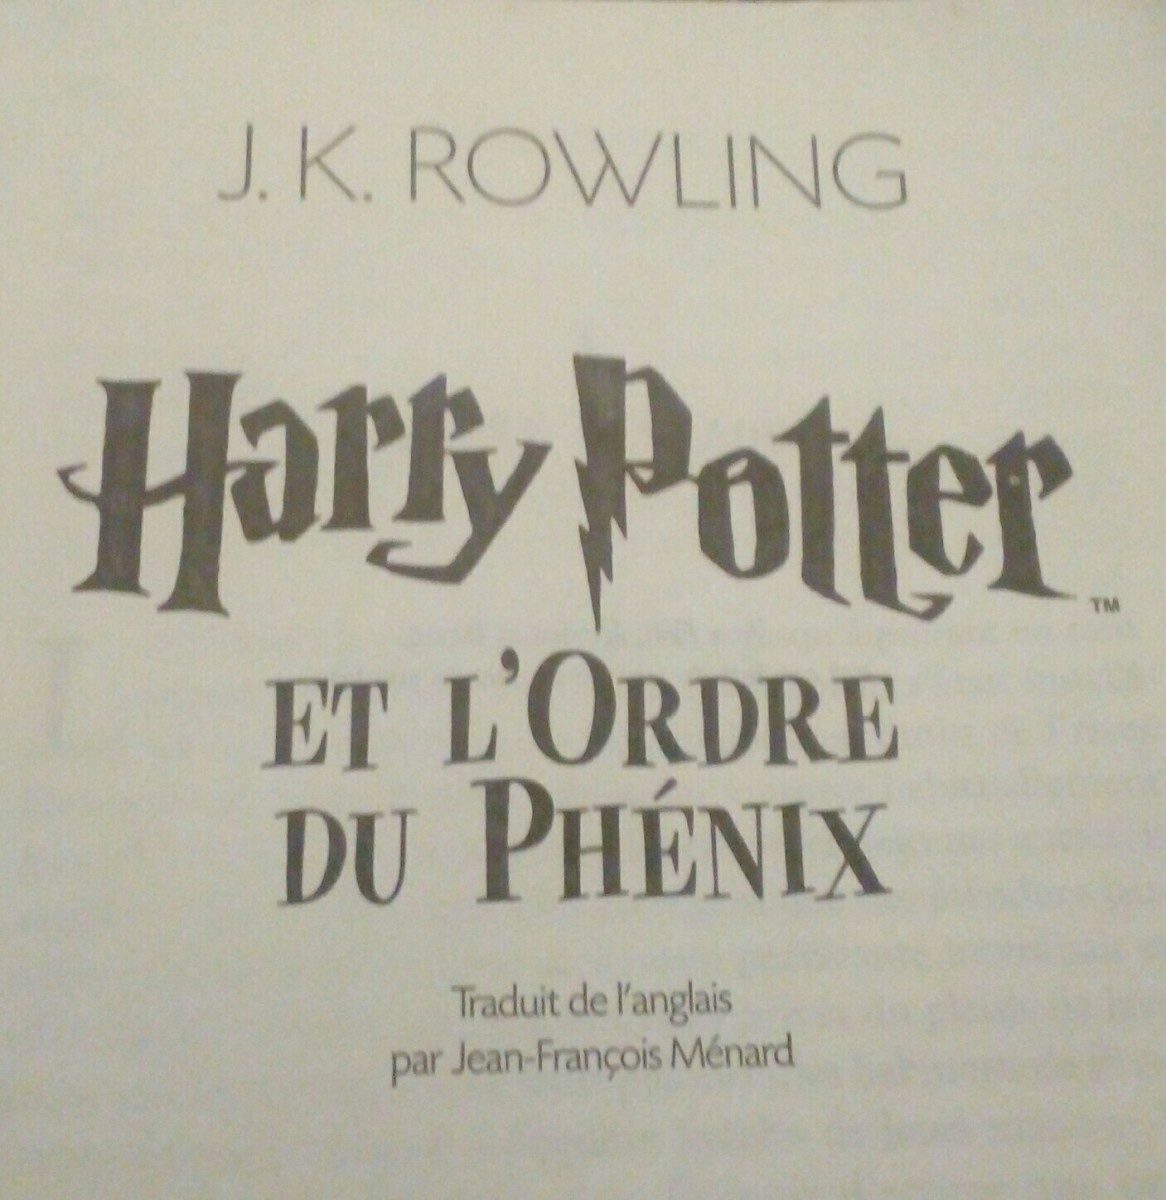 Harry Potter Et L'ordre Du Phenix, J. K. Rowling - Ingredients - fr